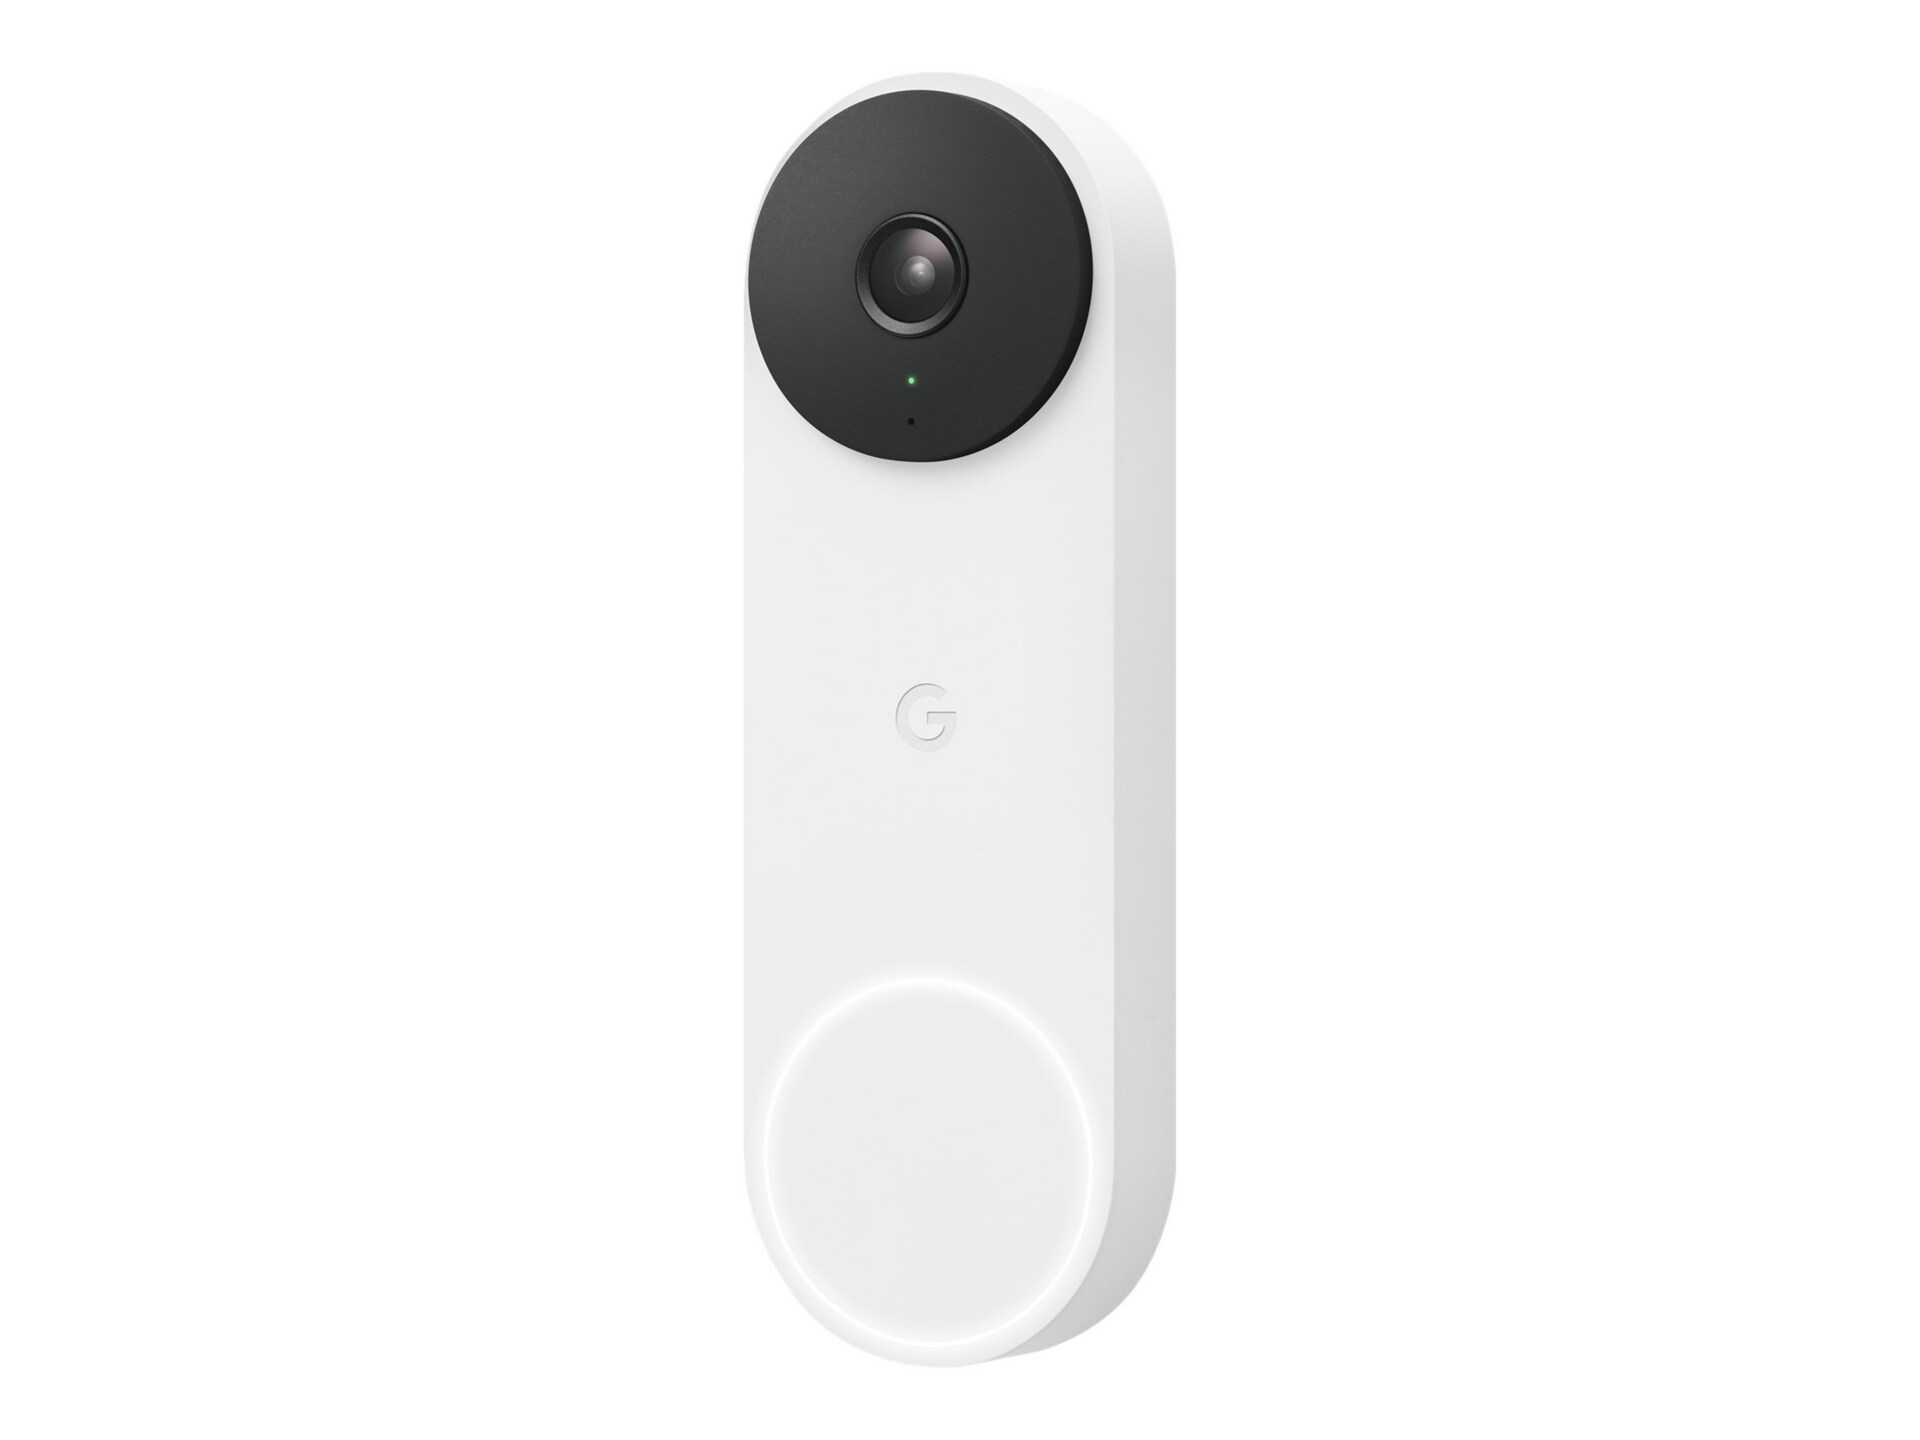 Google Nest 2nd gen - smart doorbell - wired - 802.11a/b/g/n/ac, Bluetooth LE - snow